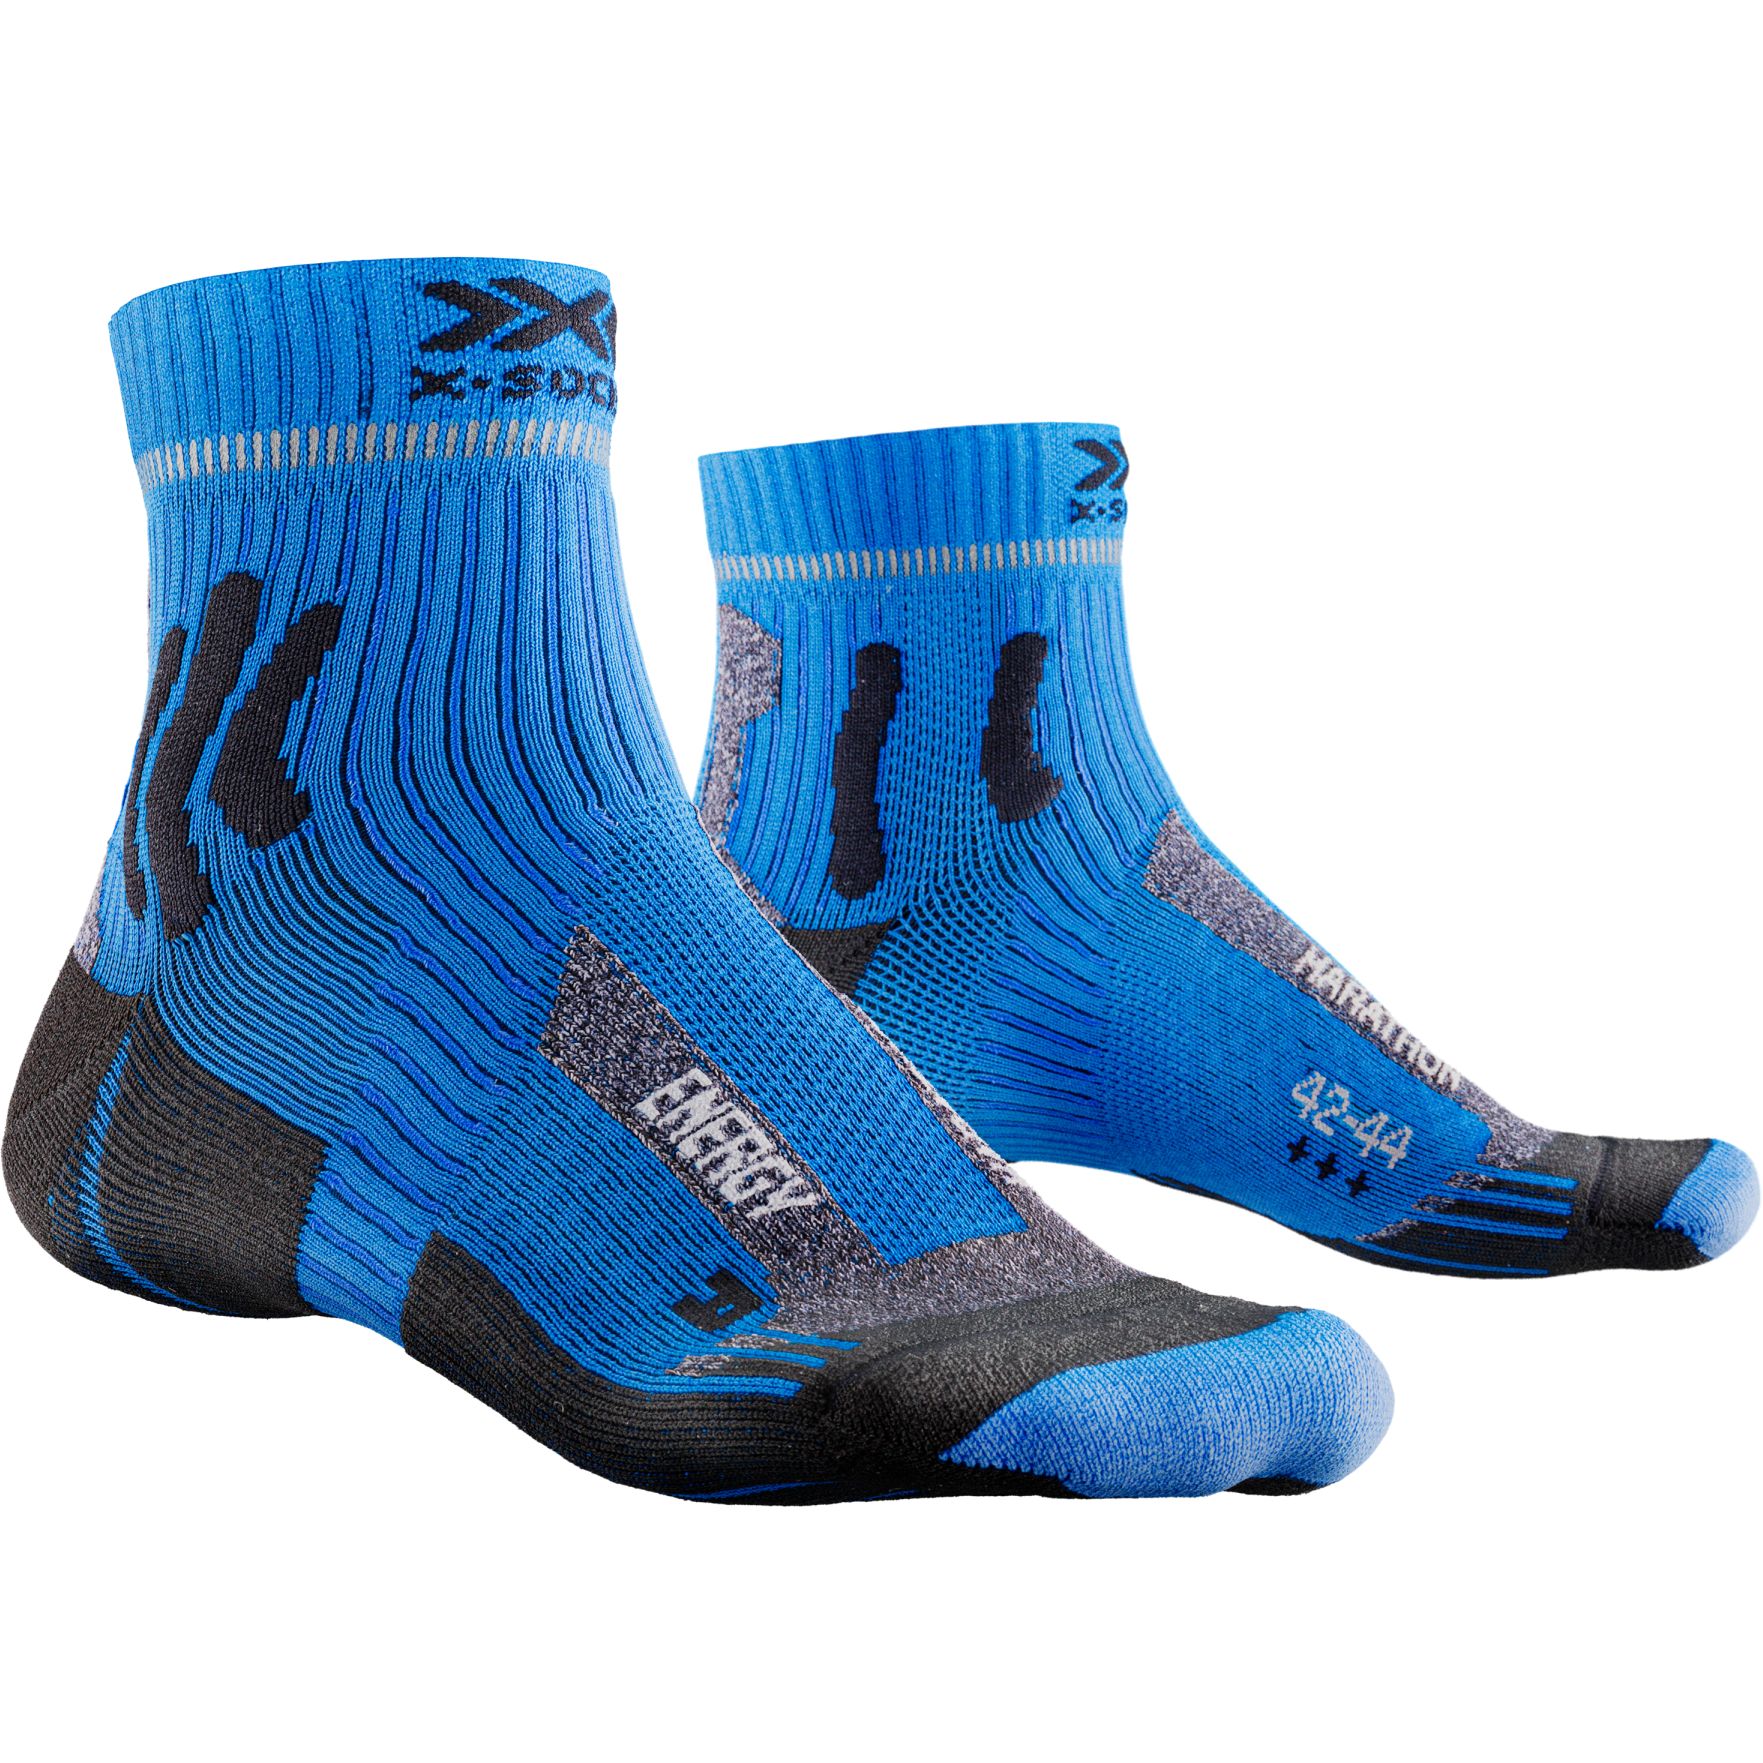 Productfoto van X-Socks Marathon Energy 4.0 Hardloopsokken - twyce blue/opal black